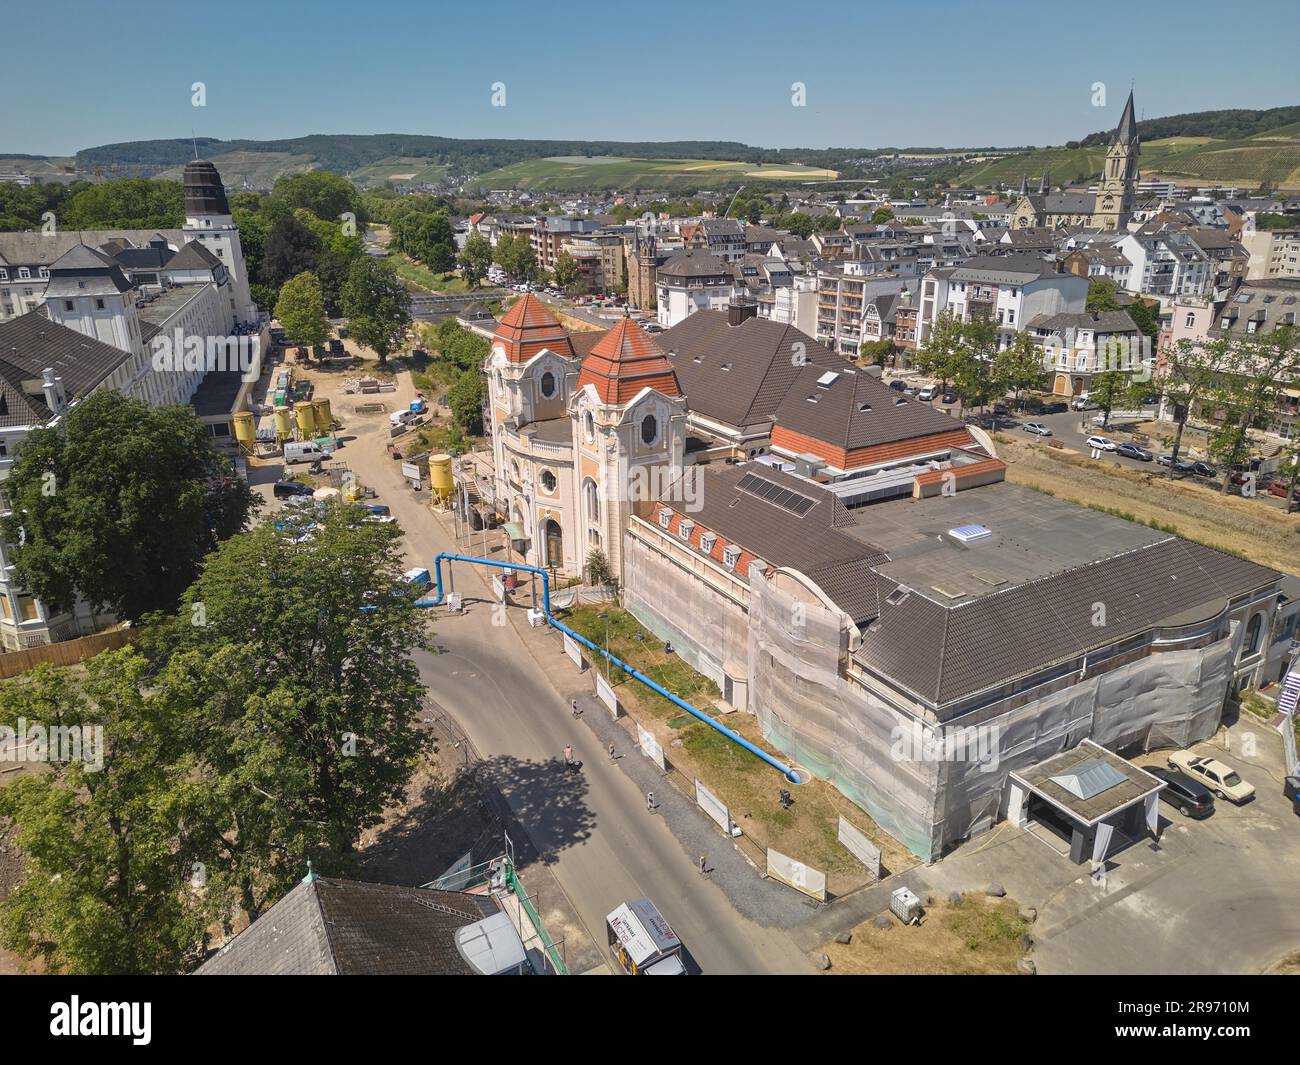 Le quartier thermal de Bad Neuenahr est encore un site de construction majeur près de deux ans après la catastrophe des inondations. Bad Neuenahr, Rhénanie-Palatinat Banque D'Images